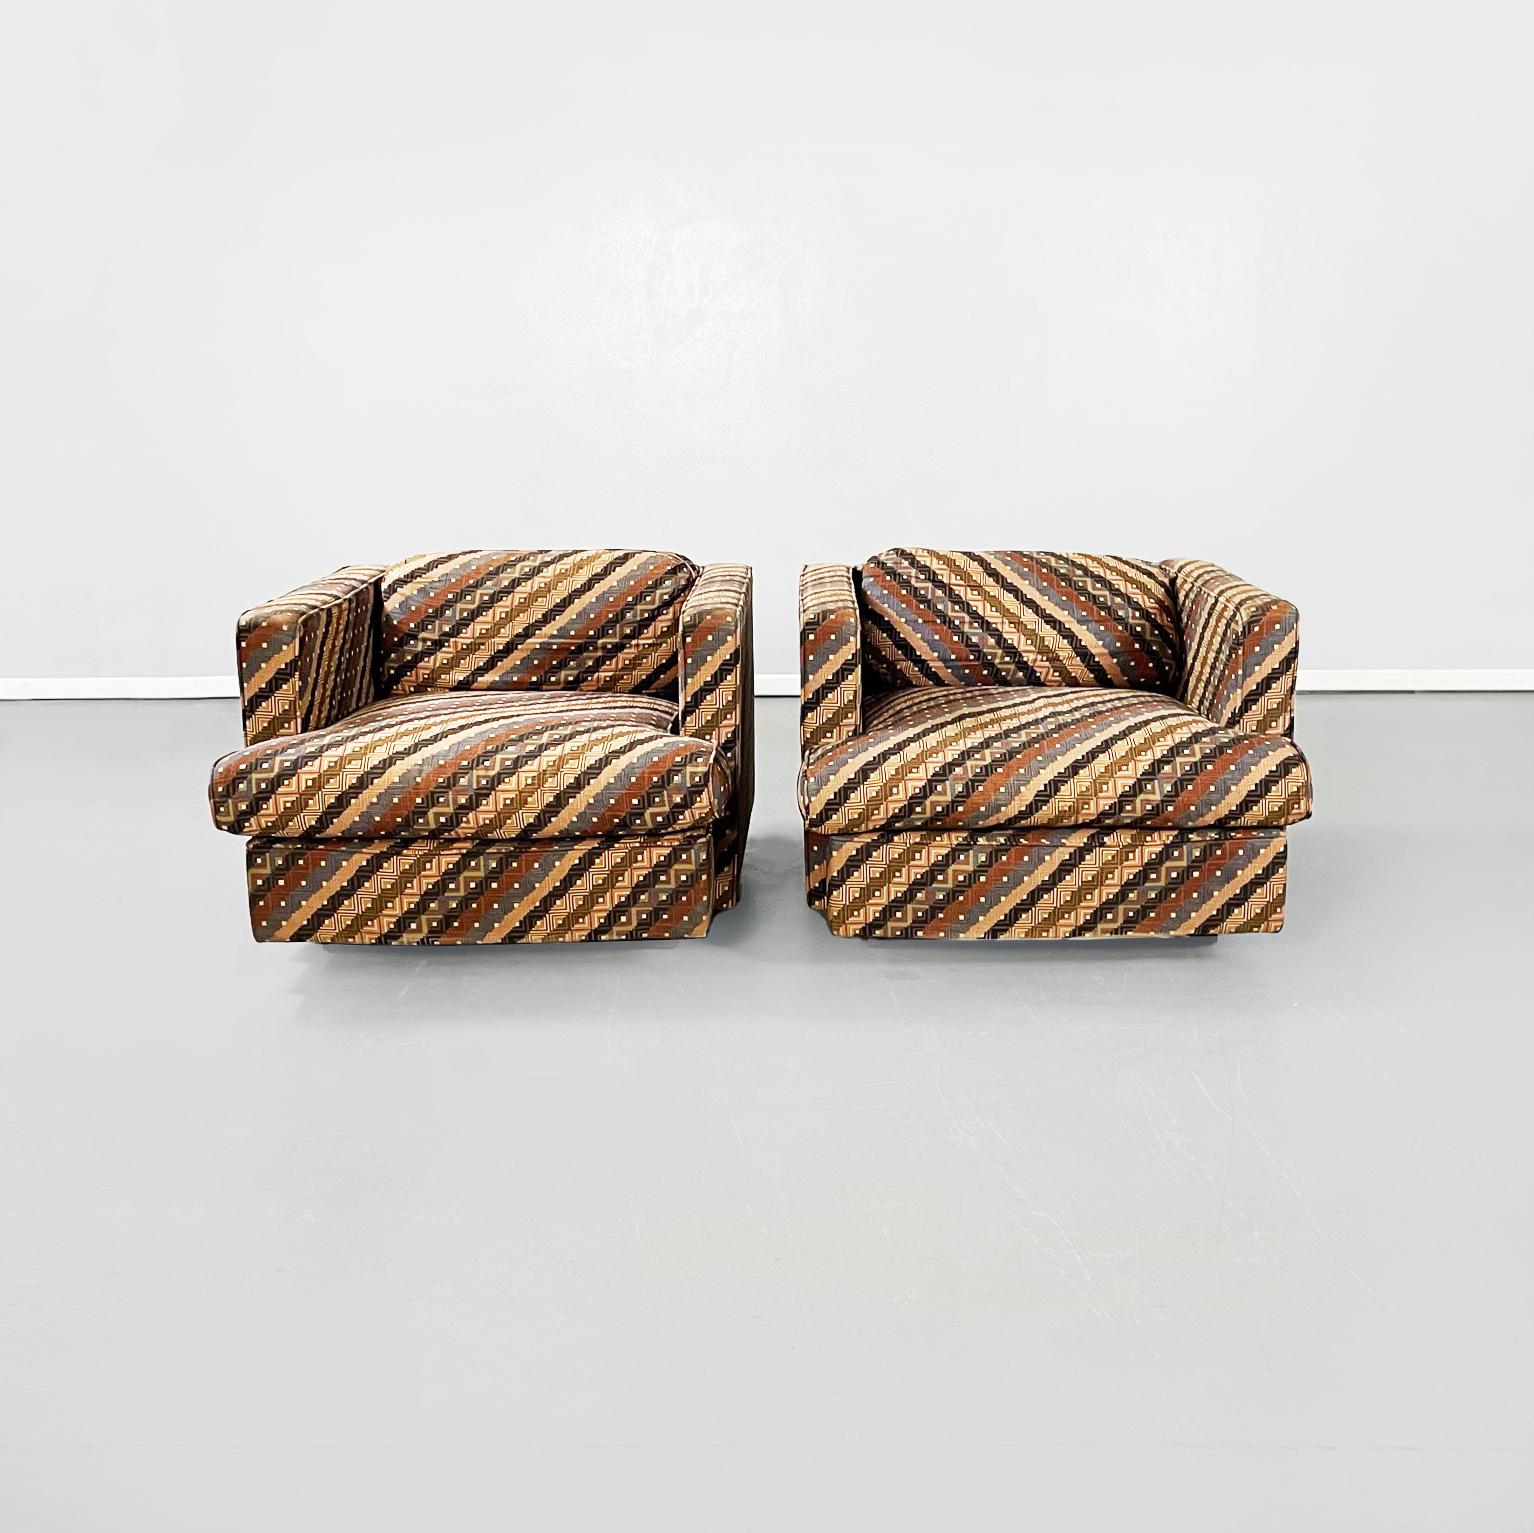 Fauteuils italiens mid-century avec tissu Missoni par Saporiti Italia, 1980
La paire de fauteuils est tapissée et recouverte de tissu Missoni aux motifs colorés de rayures et de carrés. Les deux fauteuils ont une assise carrée qui s'élargit sur le